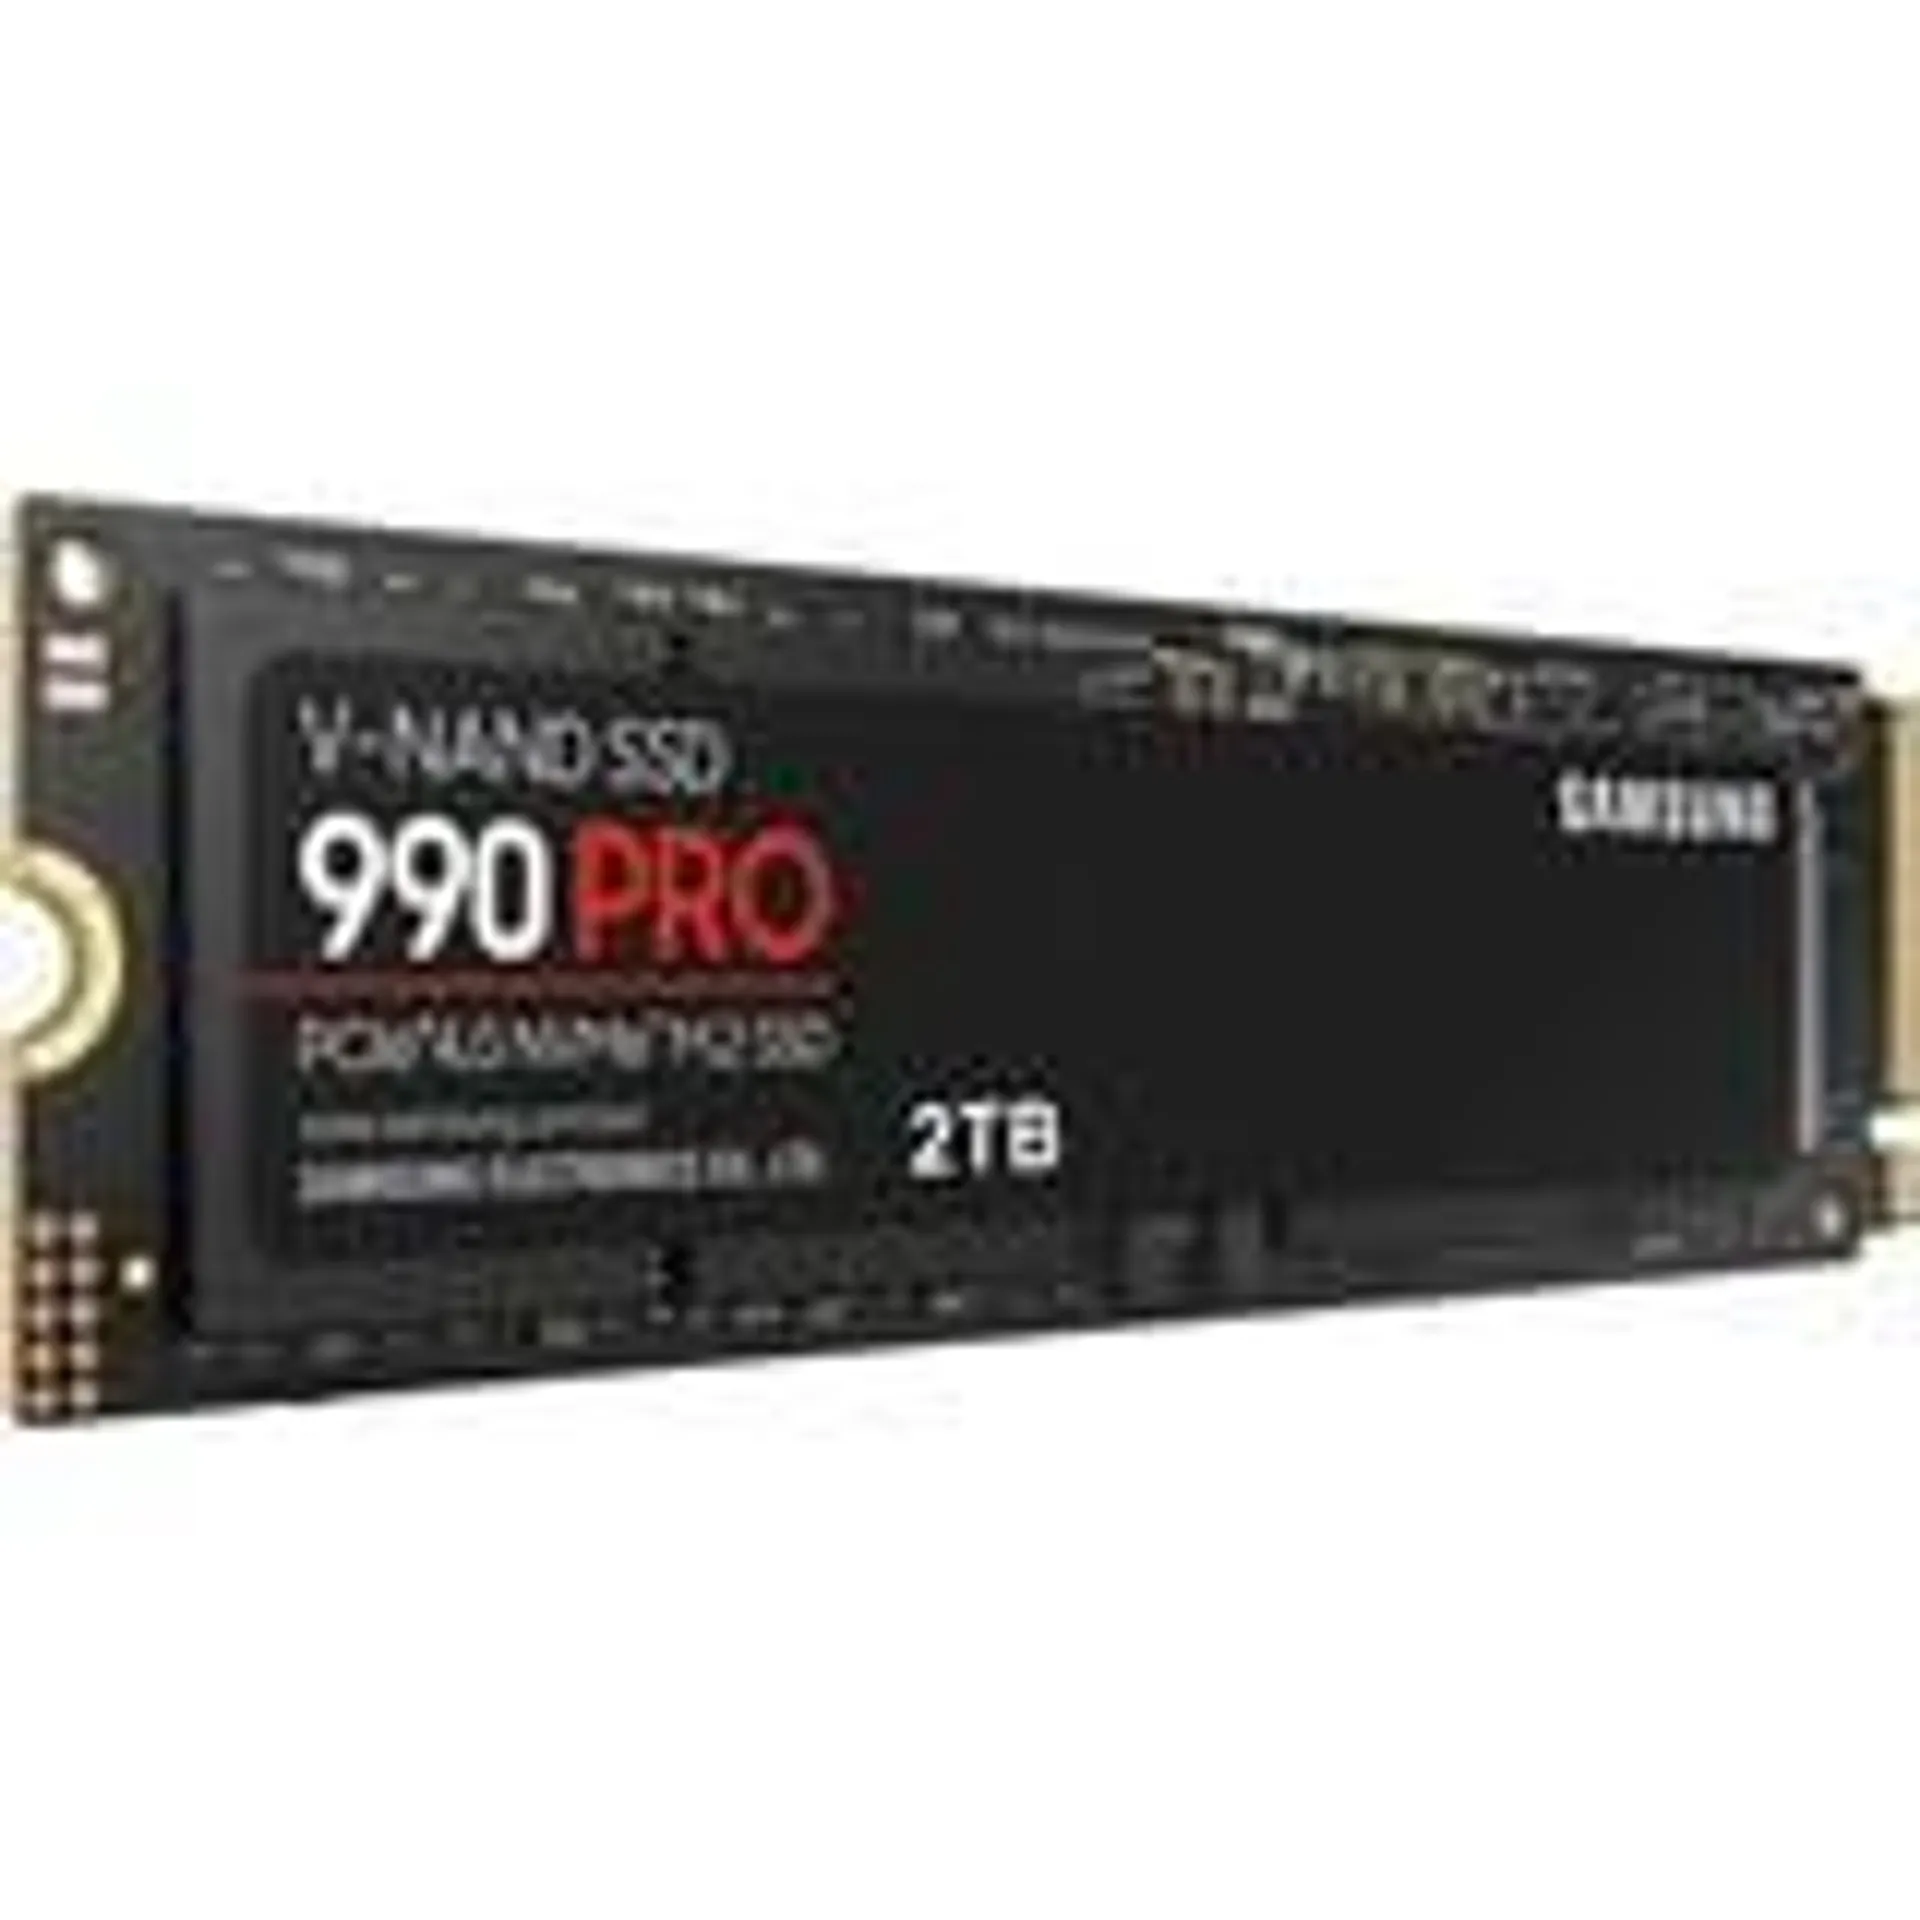 990 PRO 2 TB, SSD